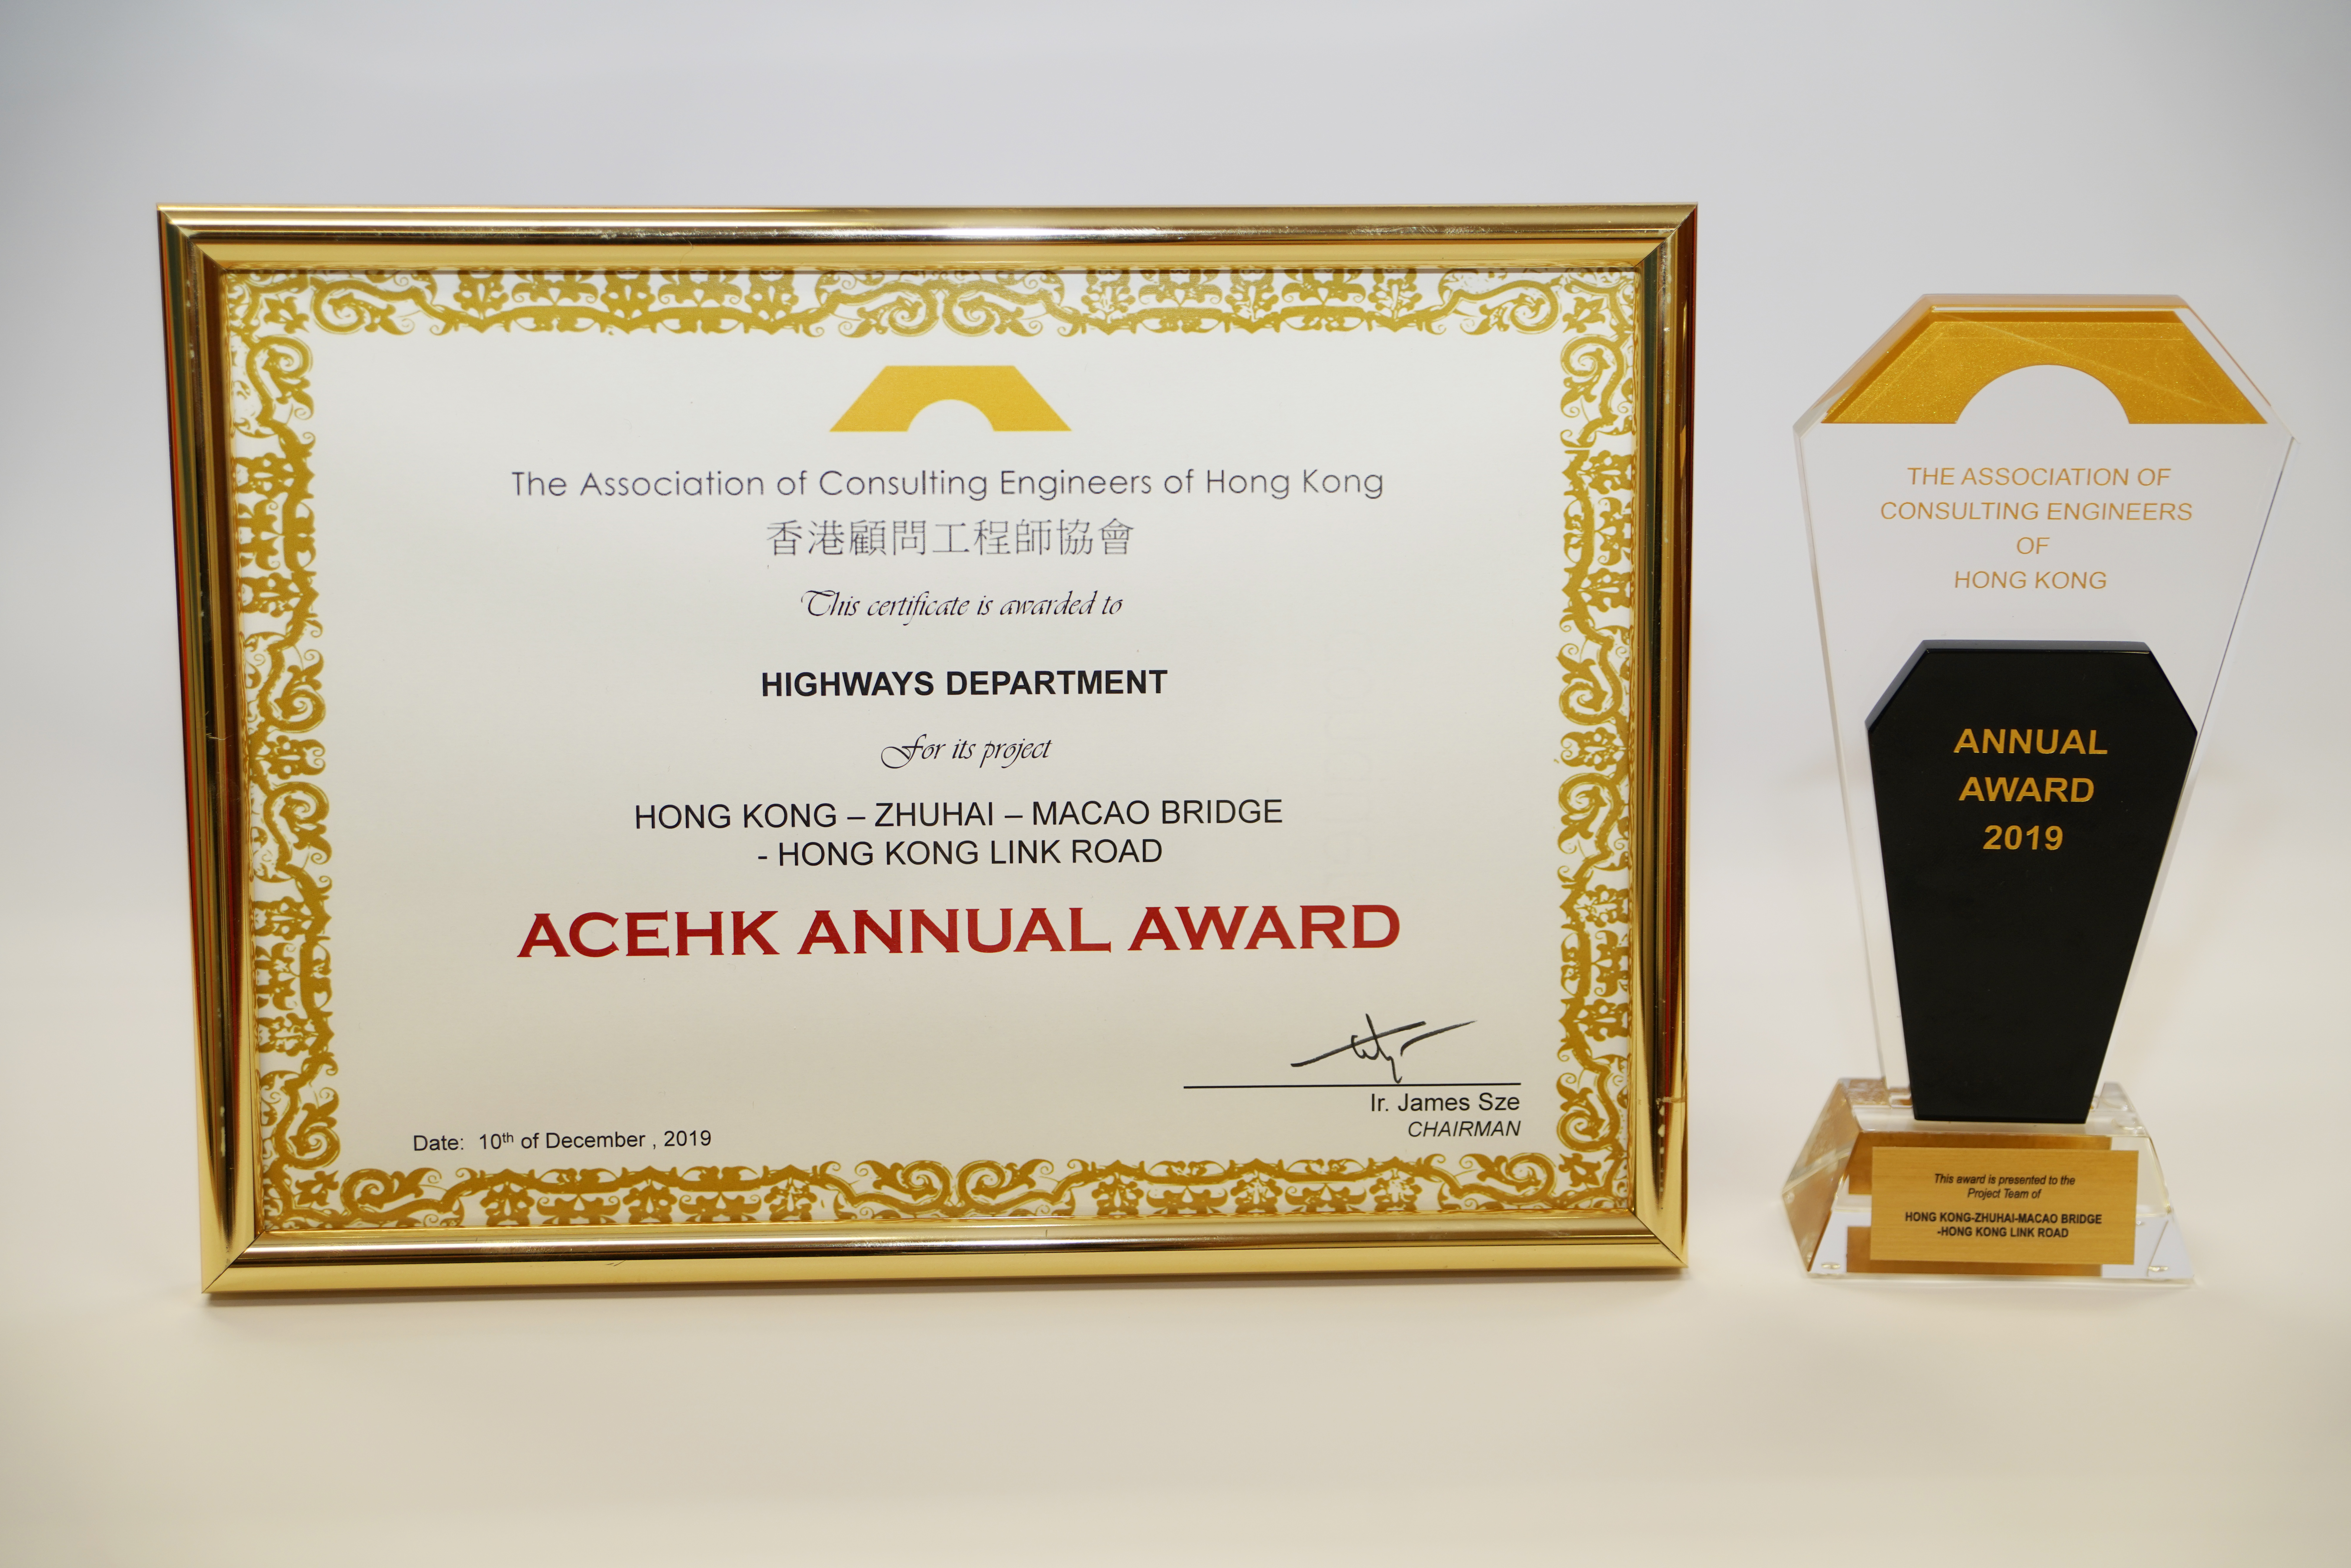 港珠澳大桥香港段香港连接路工程项目获颁顾问工程师协会年奖2019。